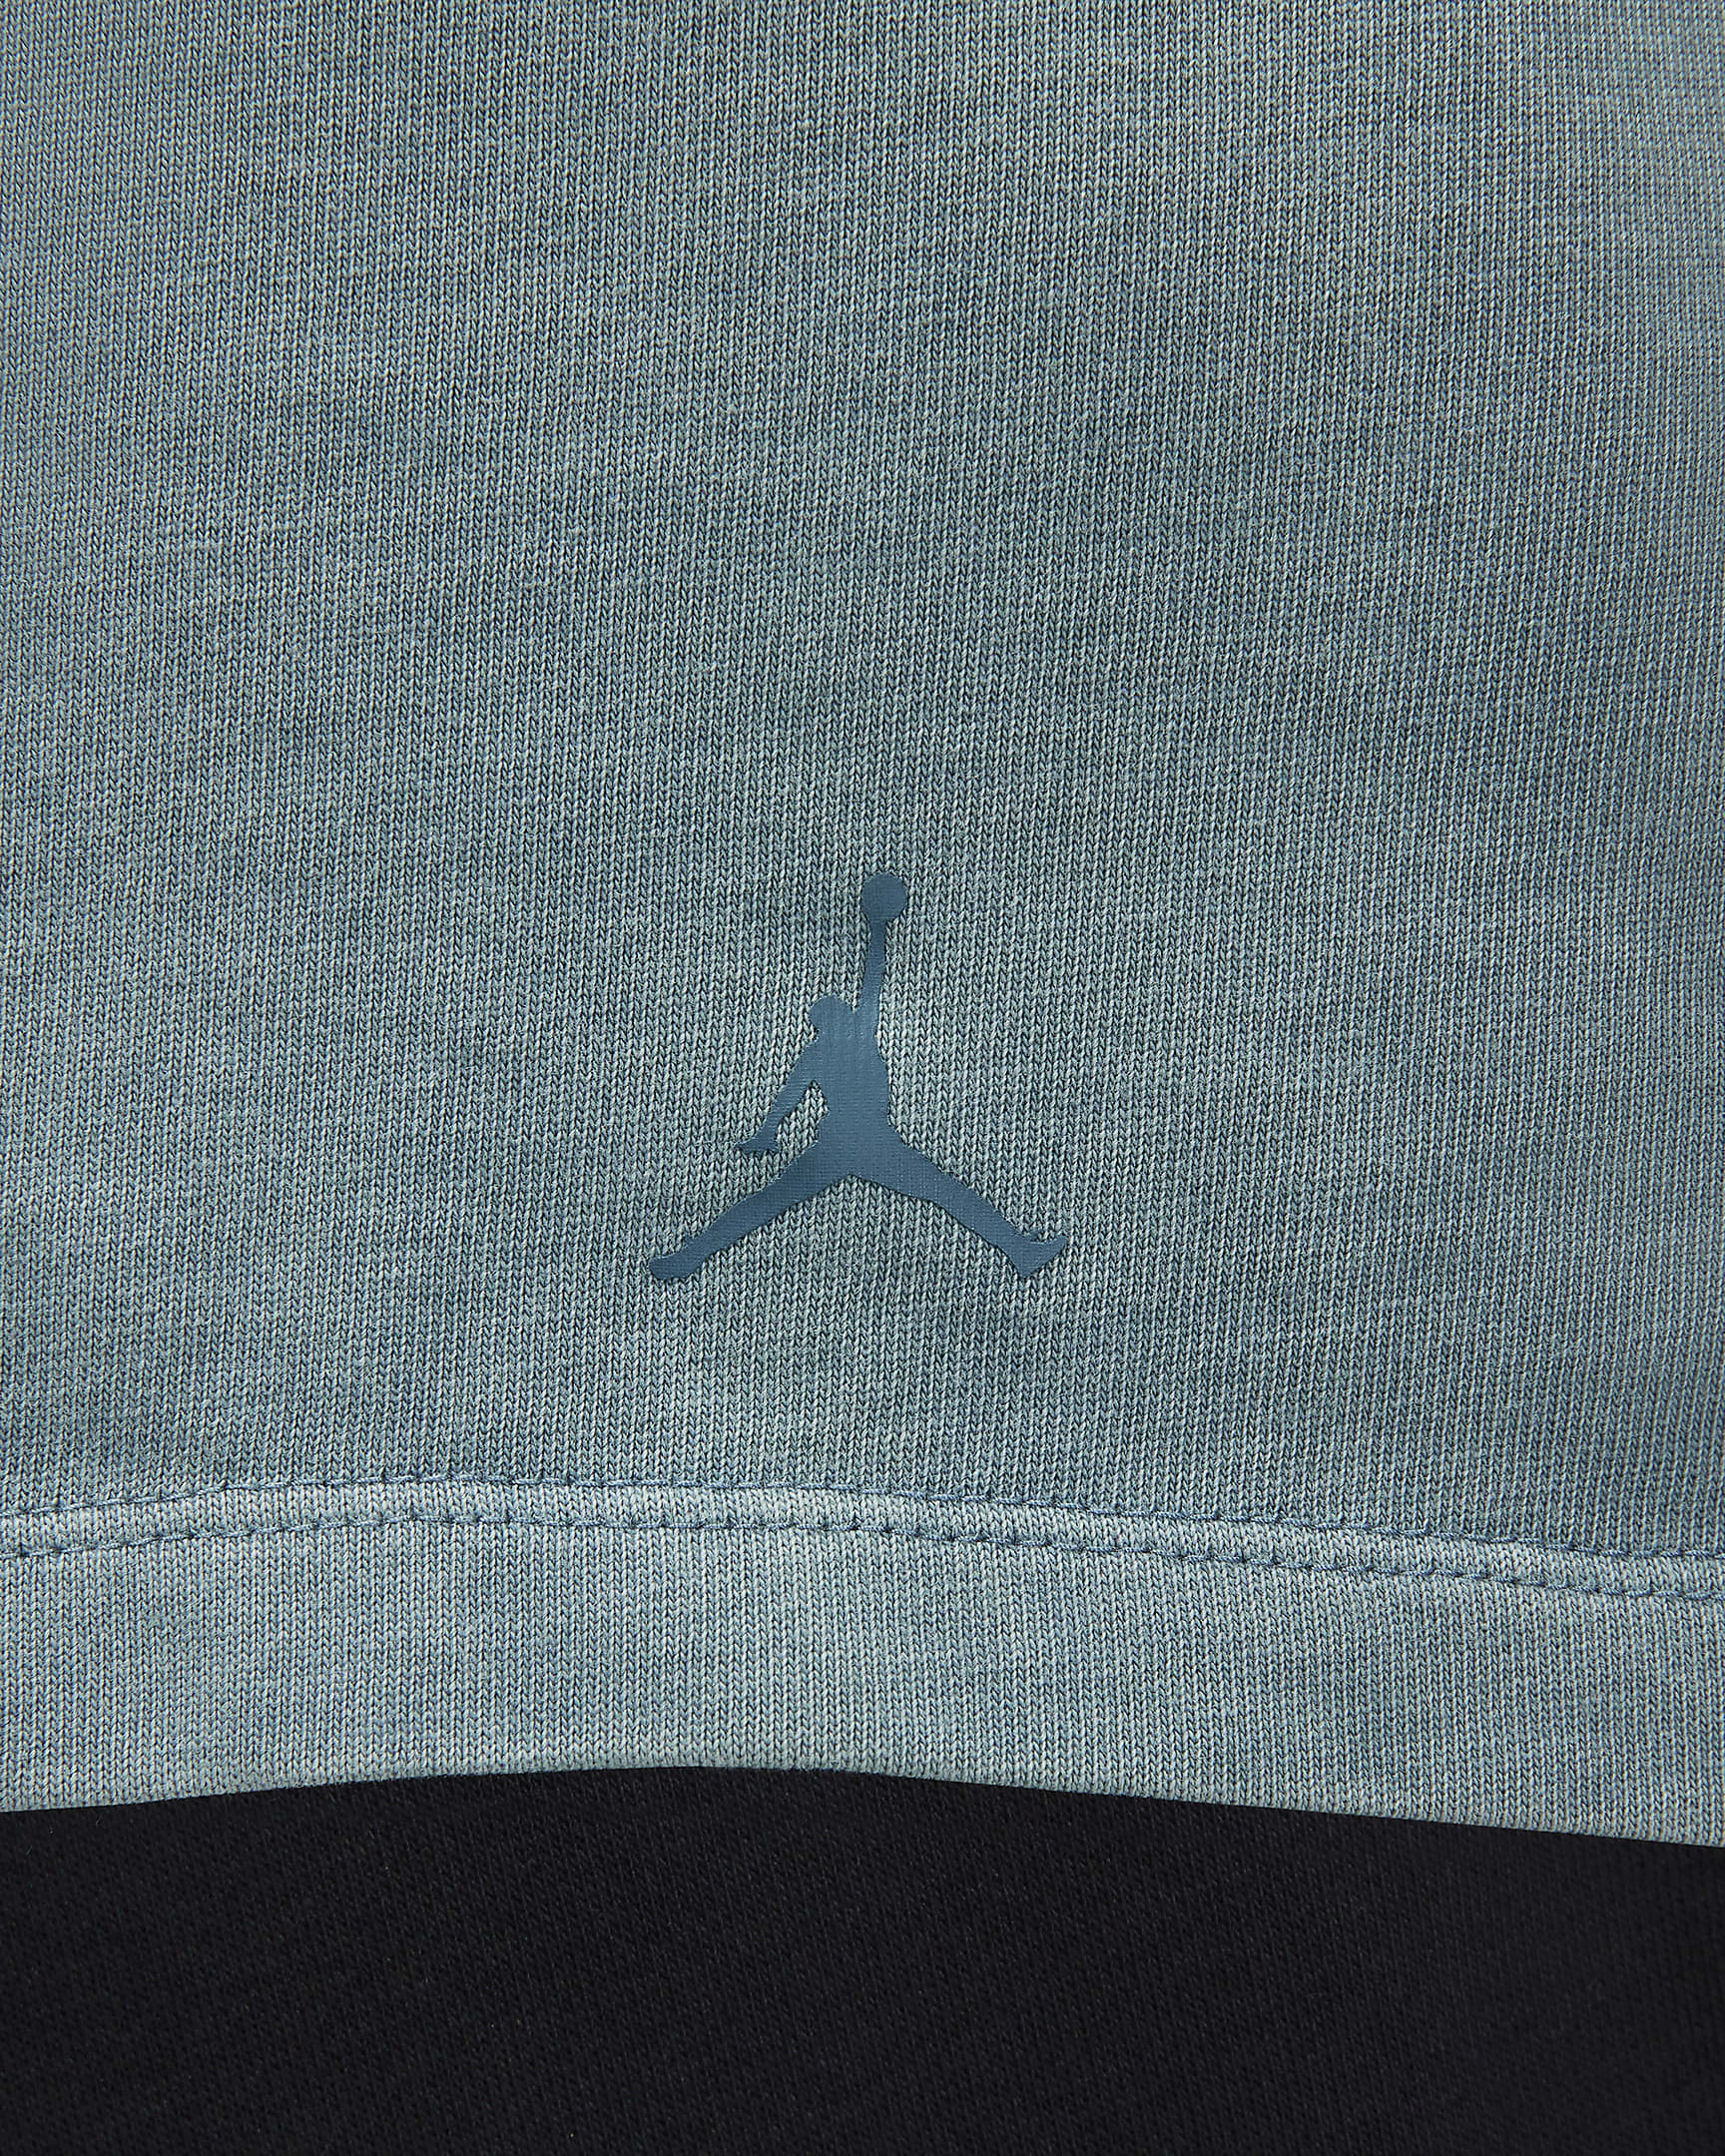 Jordan (Her)itage Women's Graphic T-Shirt (Plus Size). Nike LU